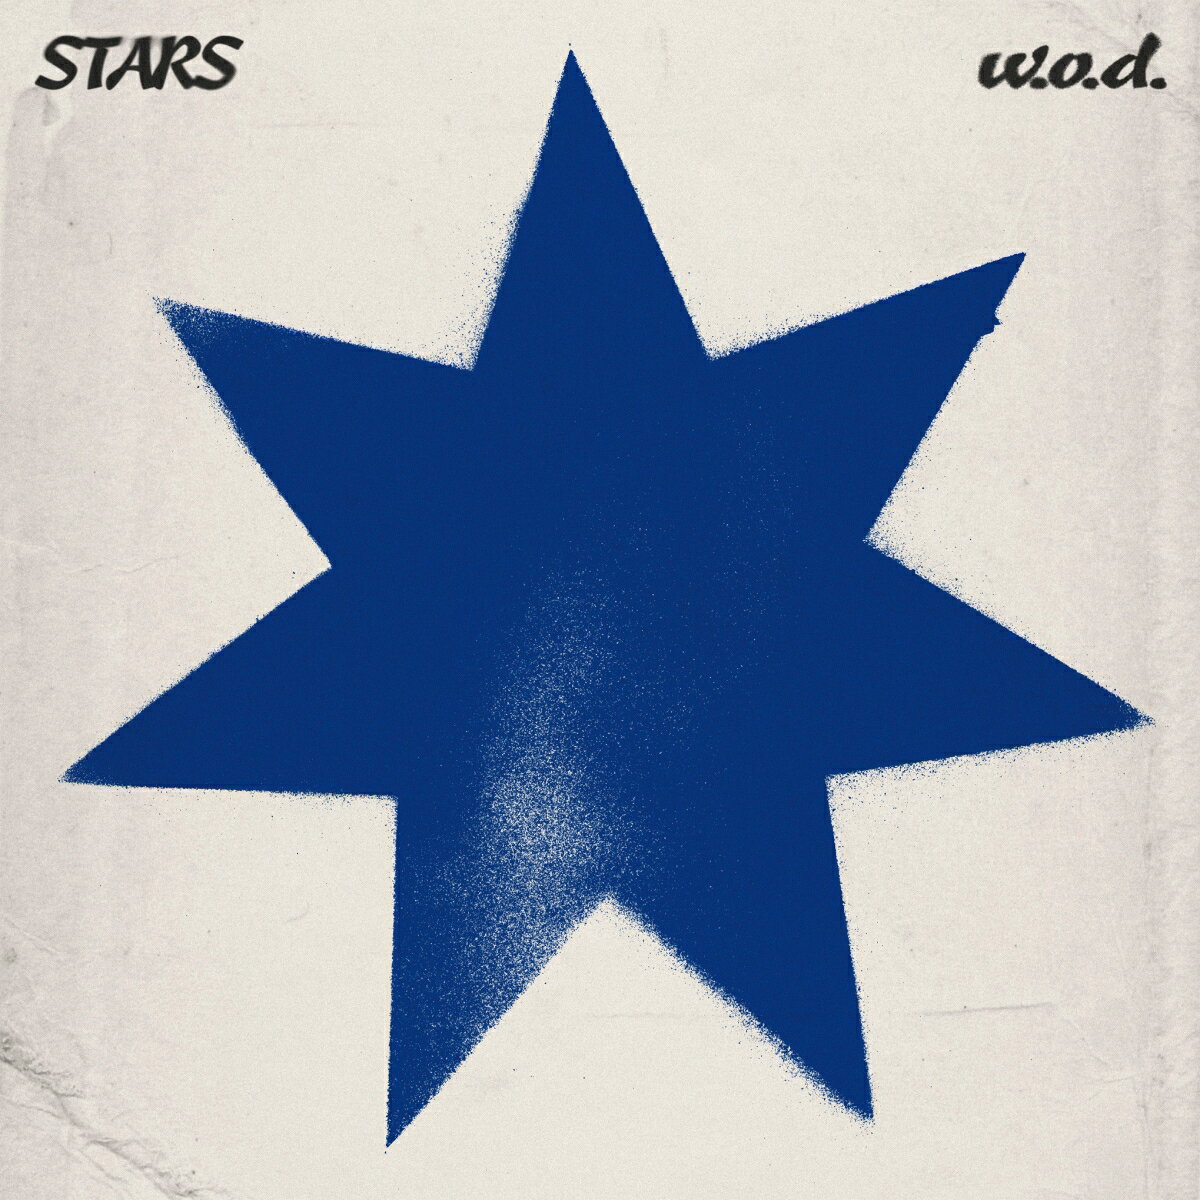 STARS(缶バッジ) [ w.o.d. ]